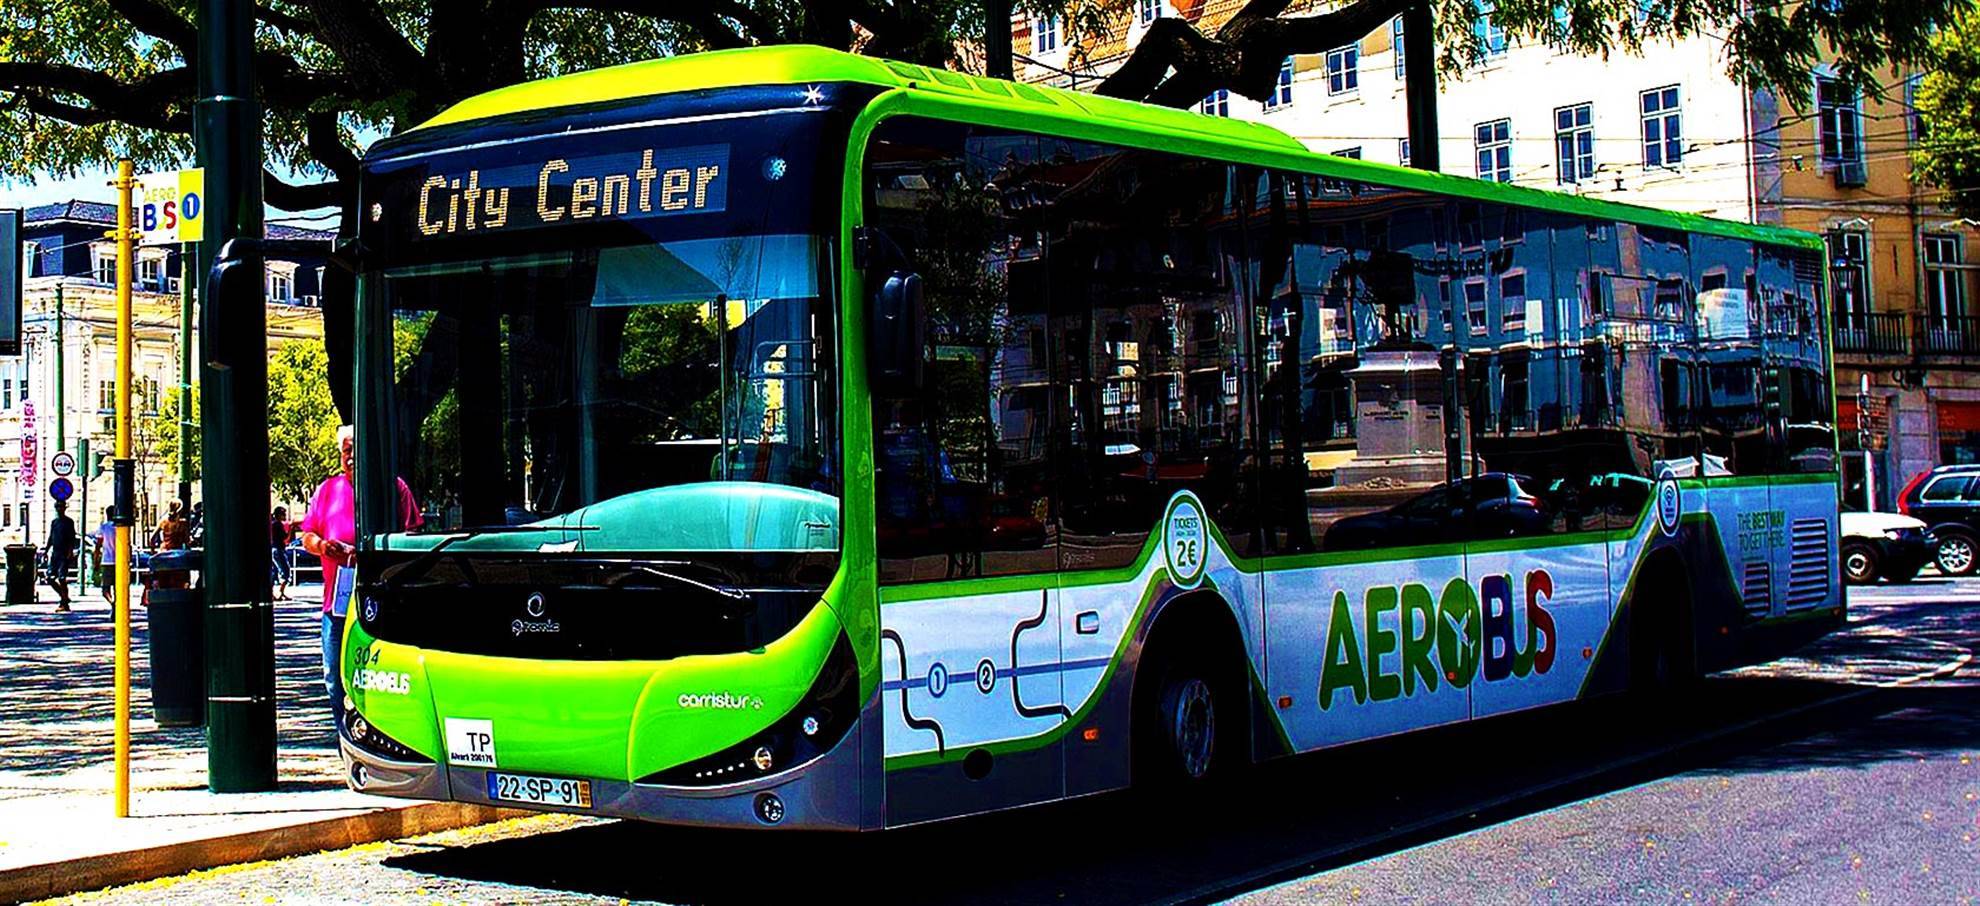 Аэропорт лиссабона и как добраться до центра города: автобусы, такси, поезд